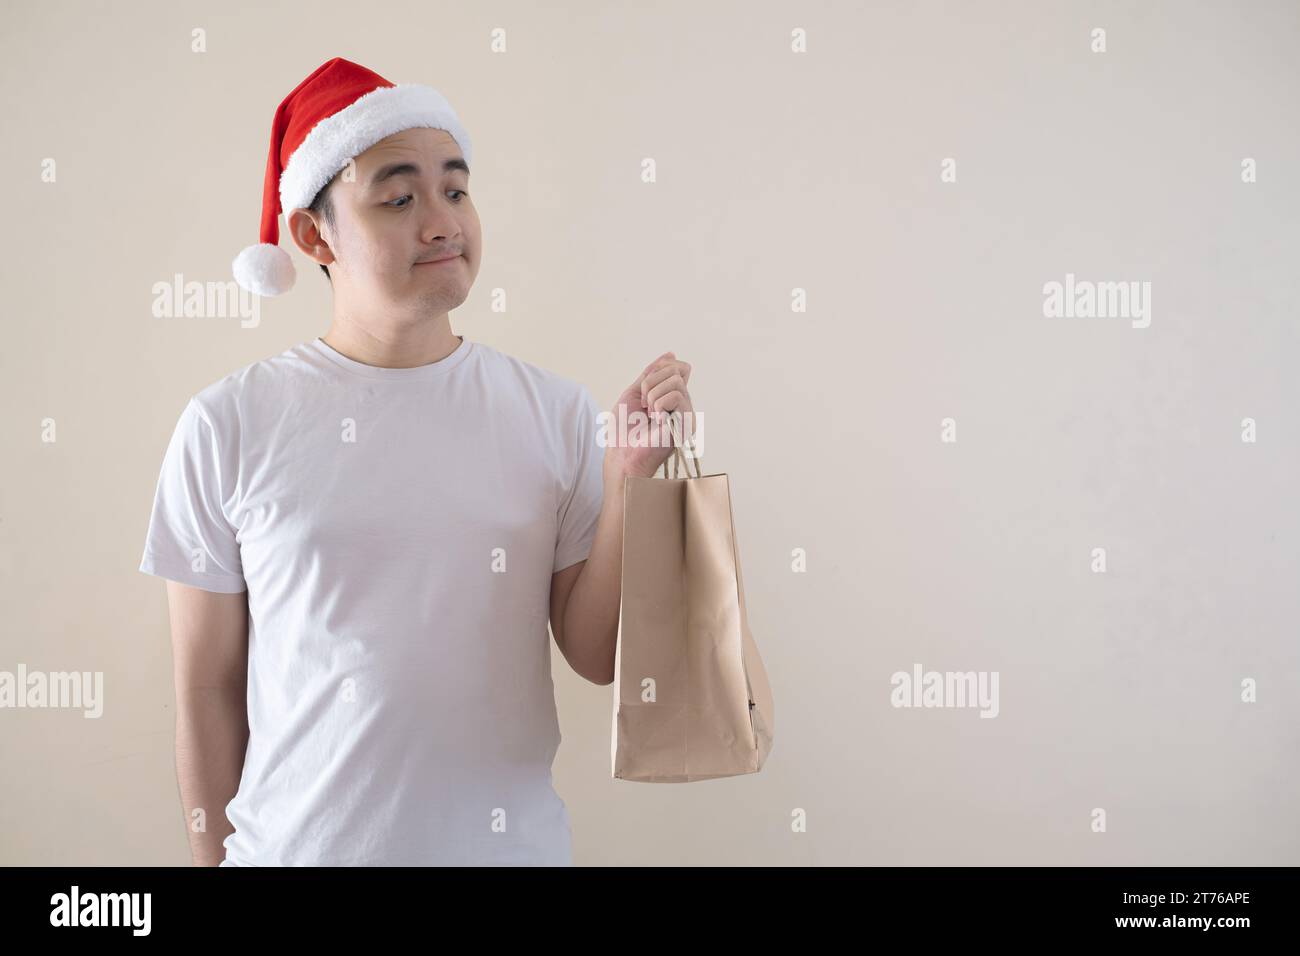 Der junge asiatische Weihnachtsmann hält sich an der Einkaufstasche auf isoliertem beigefarbenem Hintergrund. Weihnachtskonzept. Stockfoto